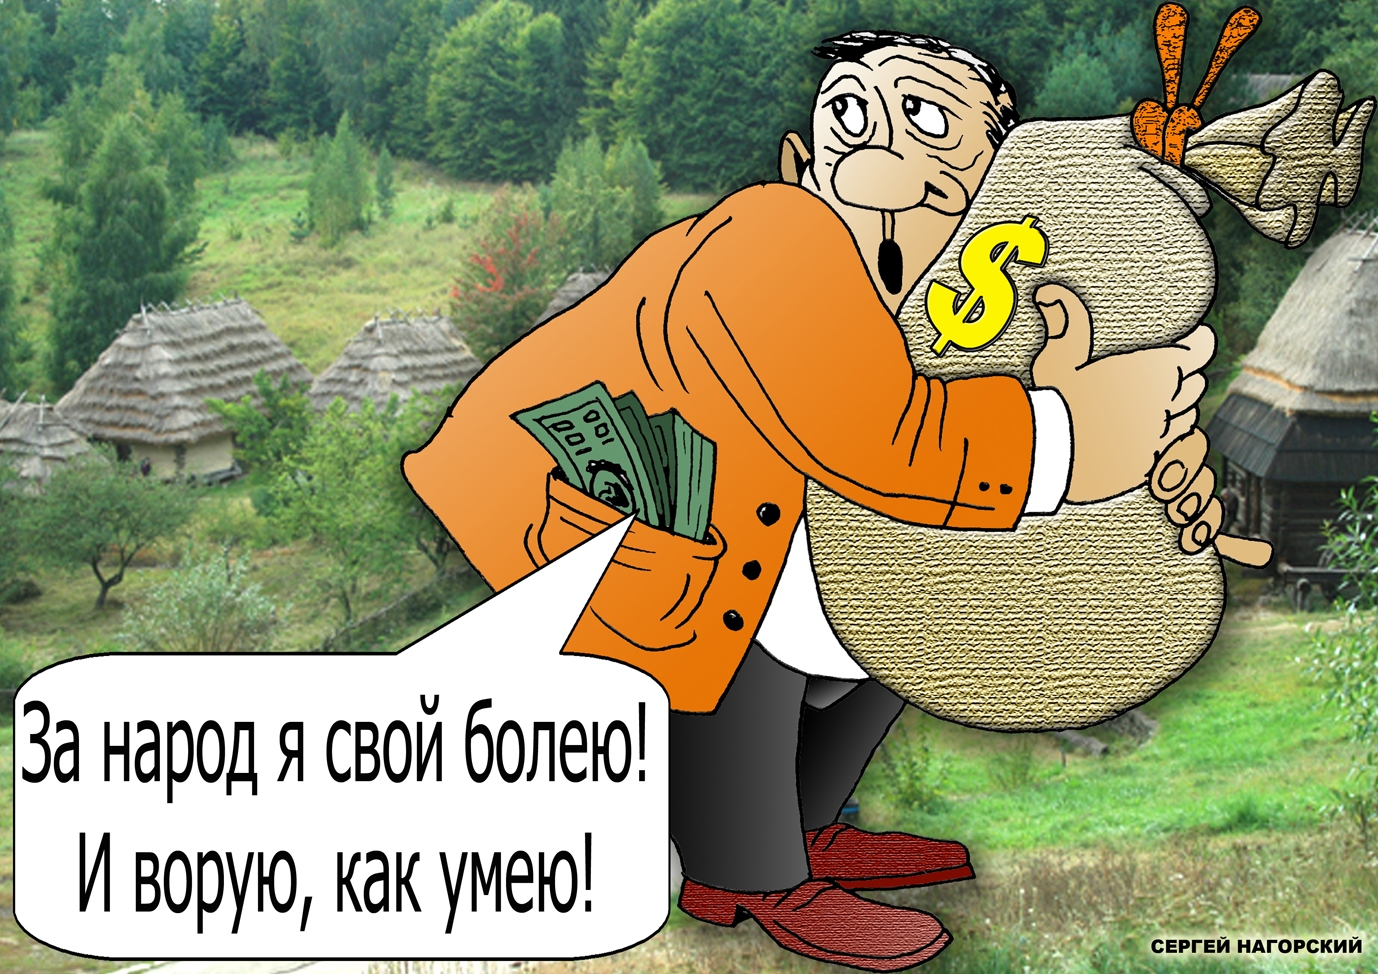 Каждый 20 рубль бюджета России украден чиновниками, которые воруют миллионами